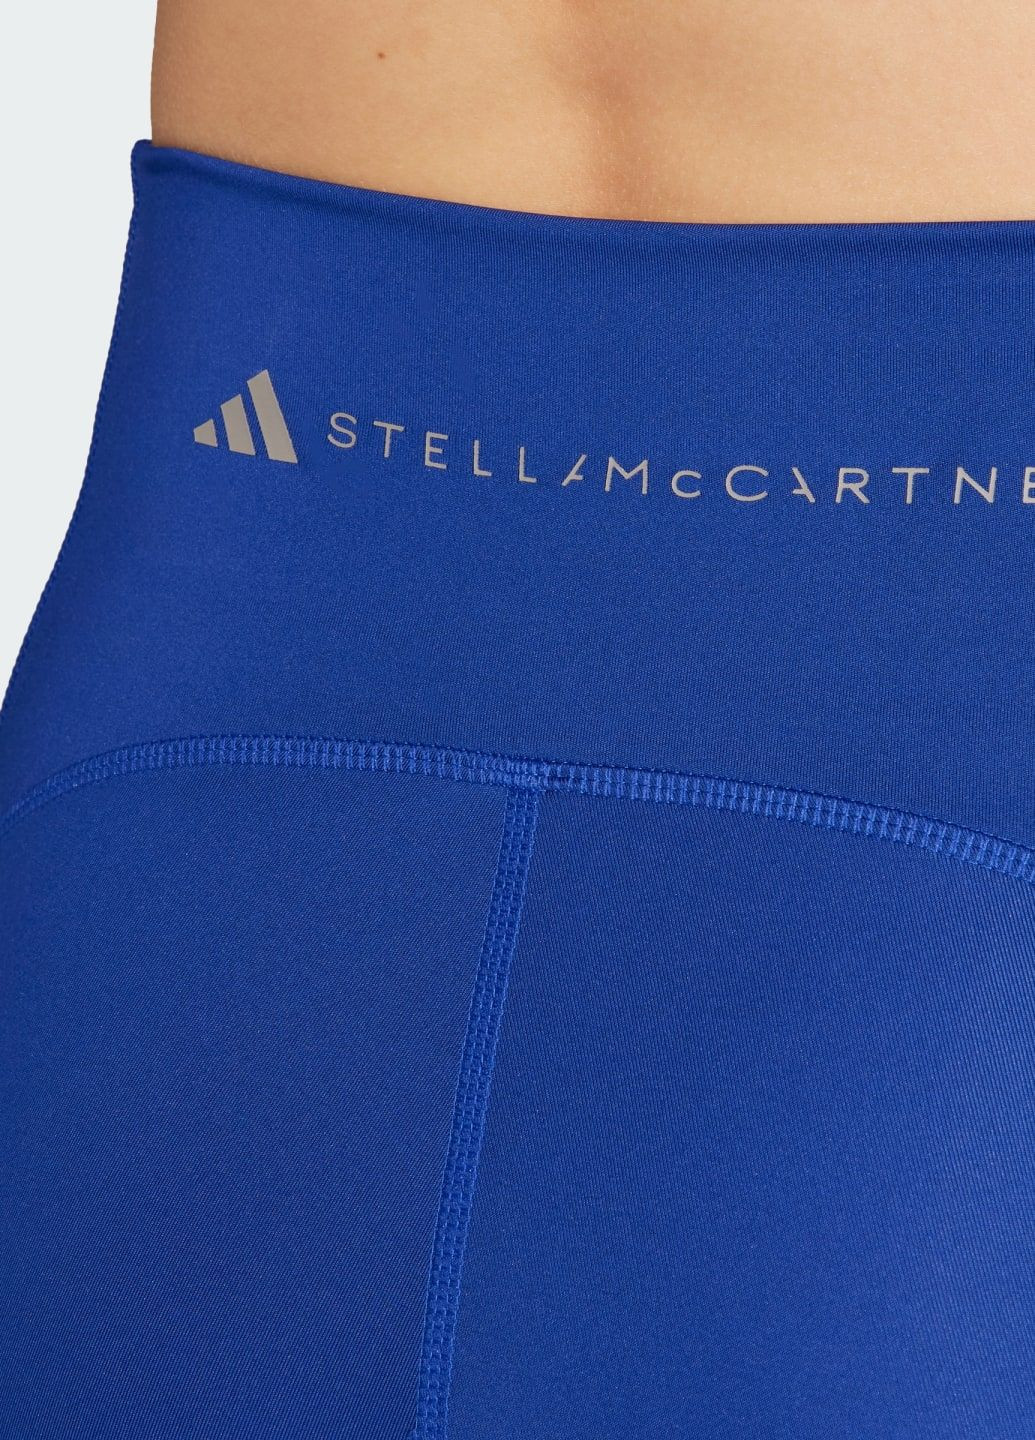 Синие демисезонные велосипедки by stella mccartney truepurpose optime training adidas